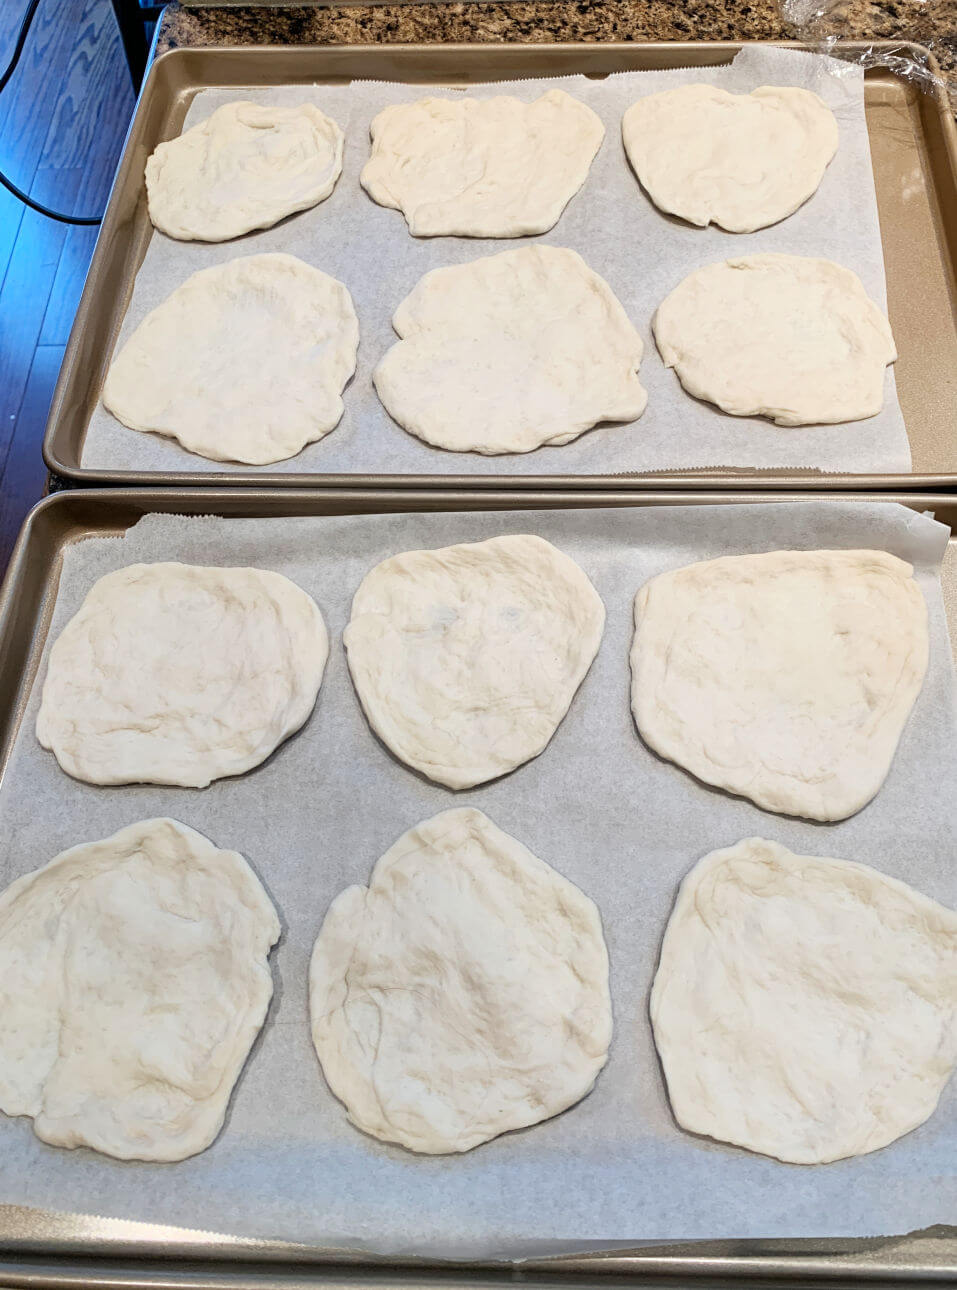 Stretch each piece of dough into a round